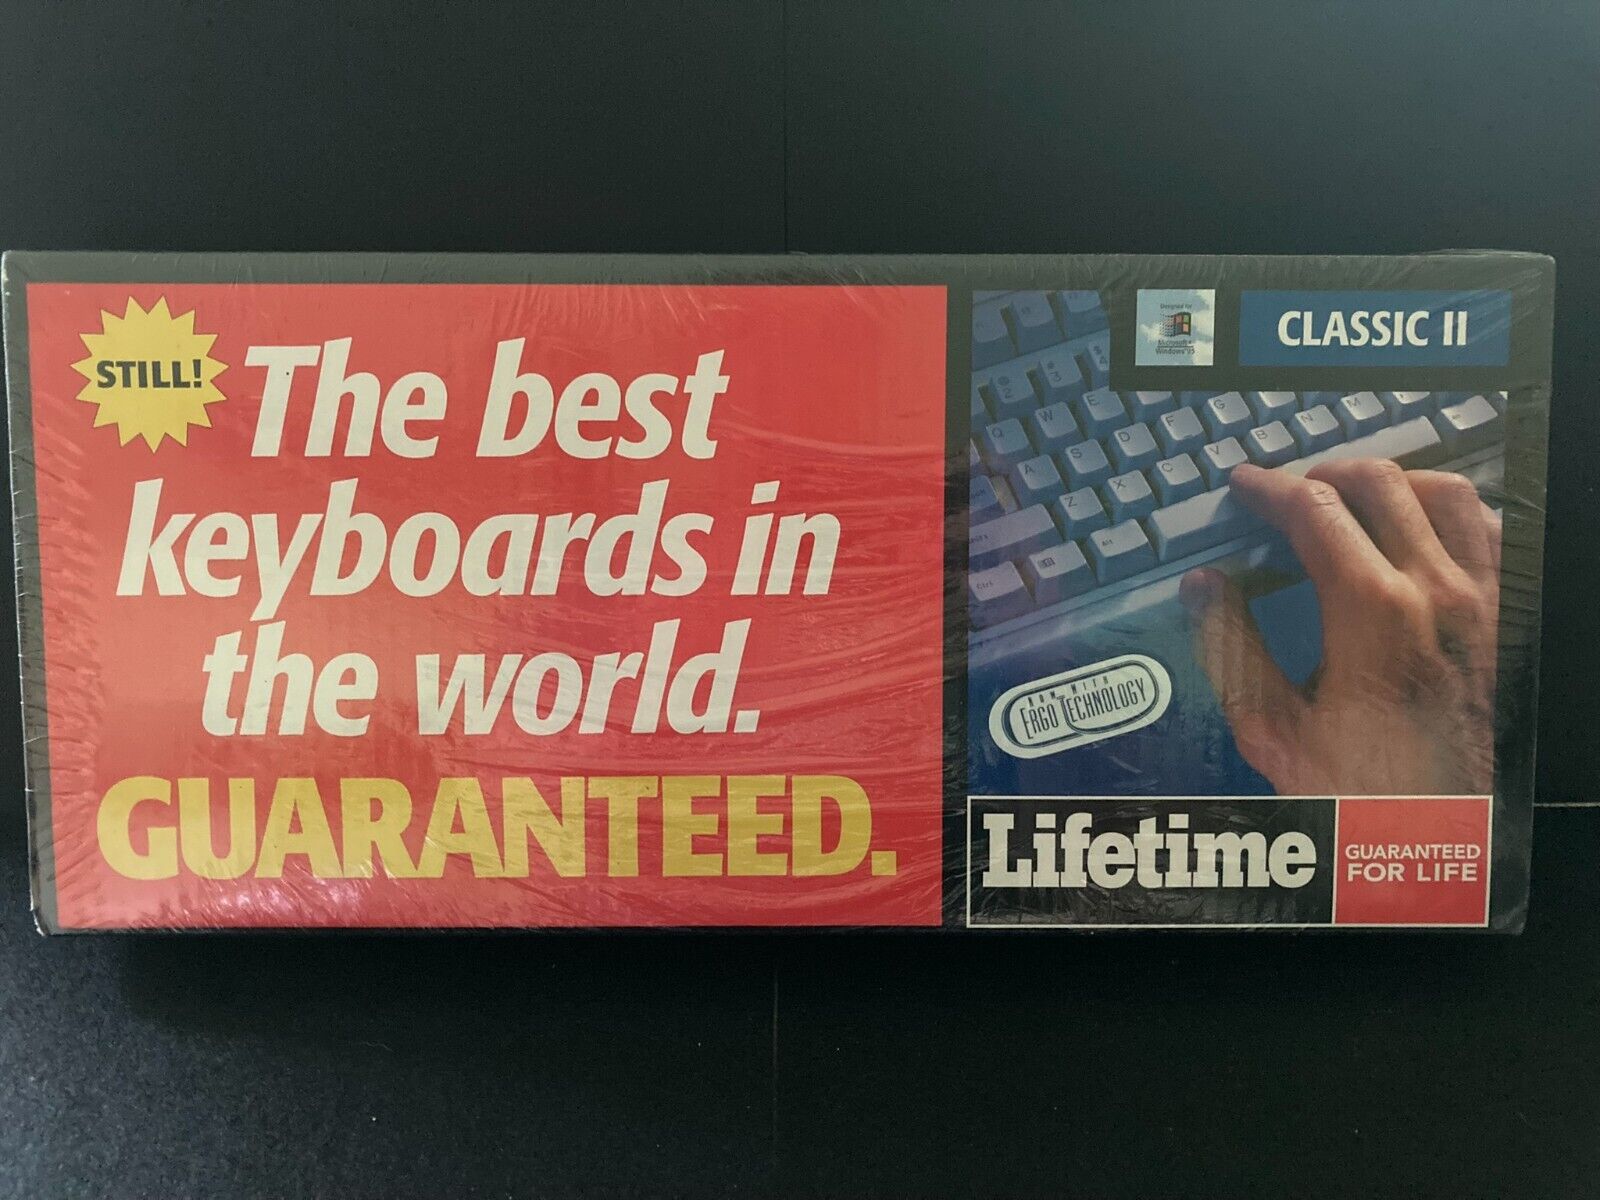 KeyTronic Lifetime Classic II Keyboard New in Sealed Box